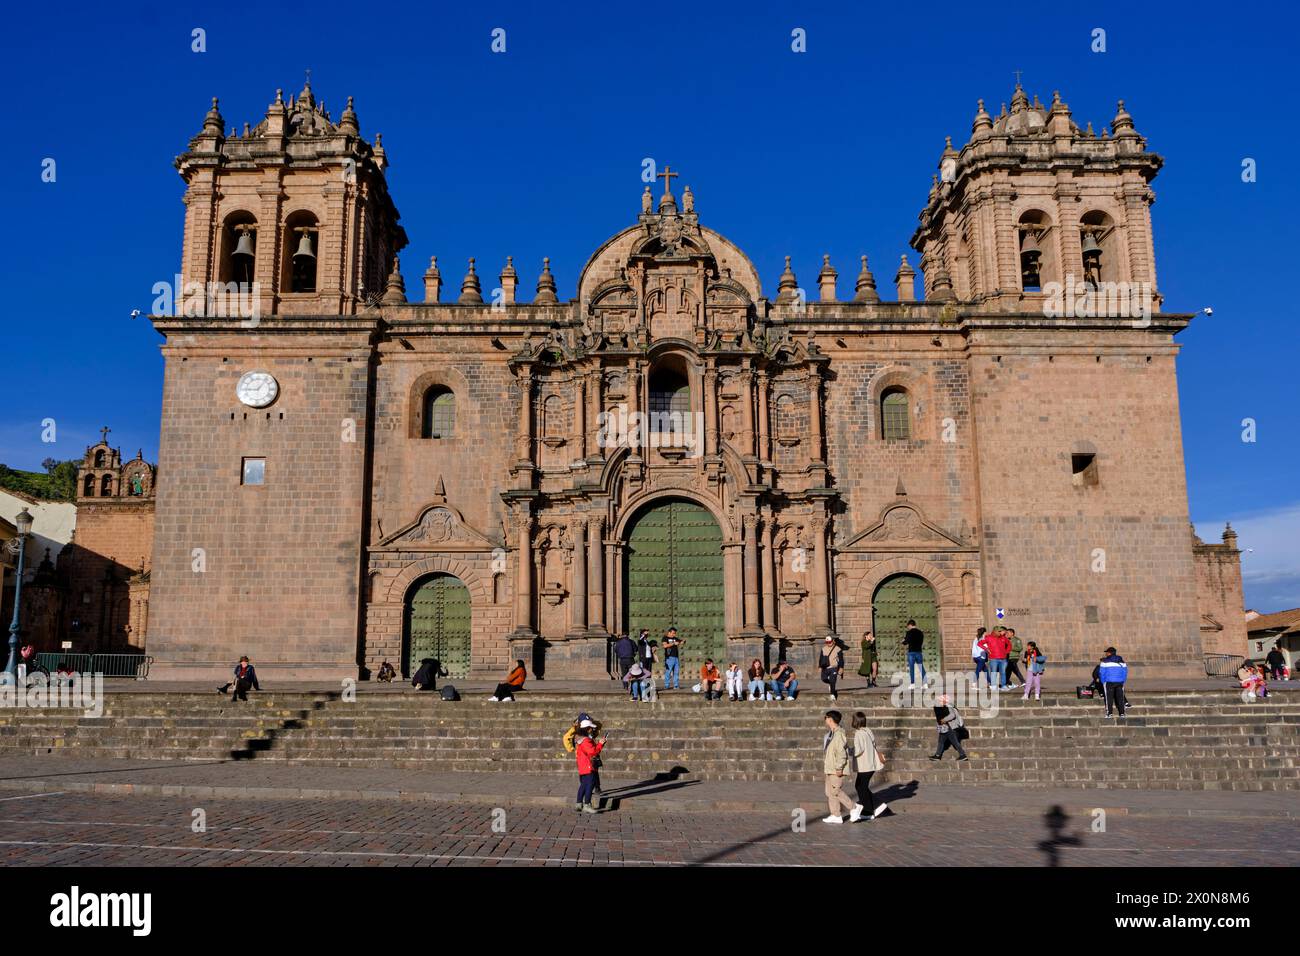 Pérou, province de Cuzco, Cuzco, classée au patrimoine mondial de l'UNESCO, Plaza de Armas, cathédrale notre-Dame-de-l'Assomption de style baroque colonial Banque D'Images